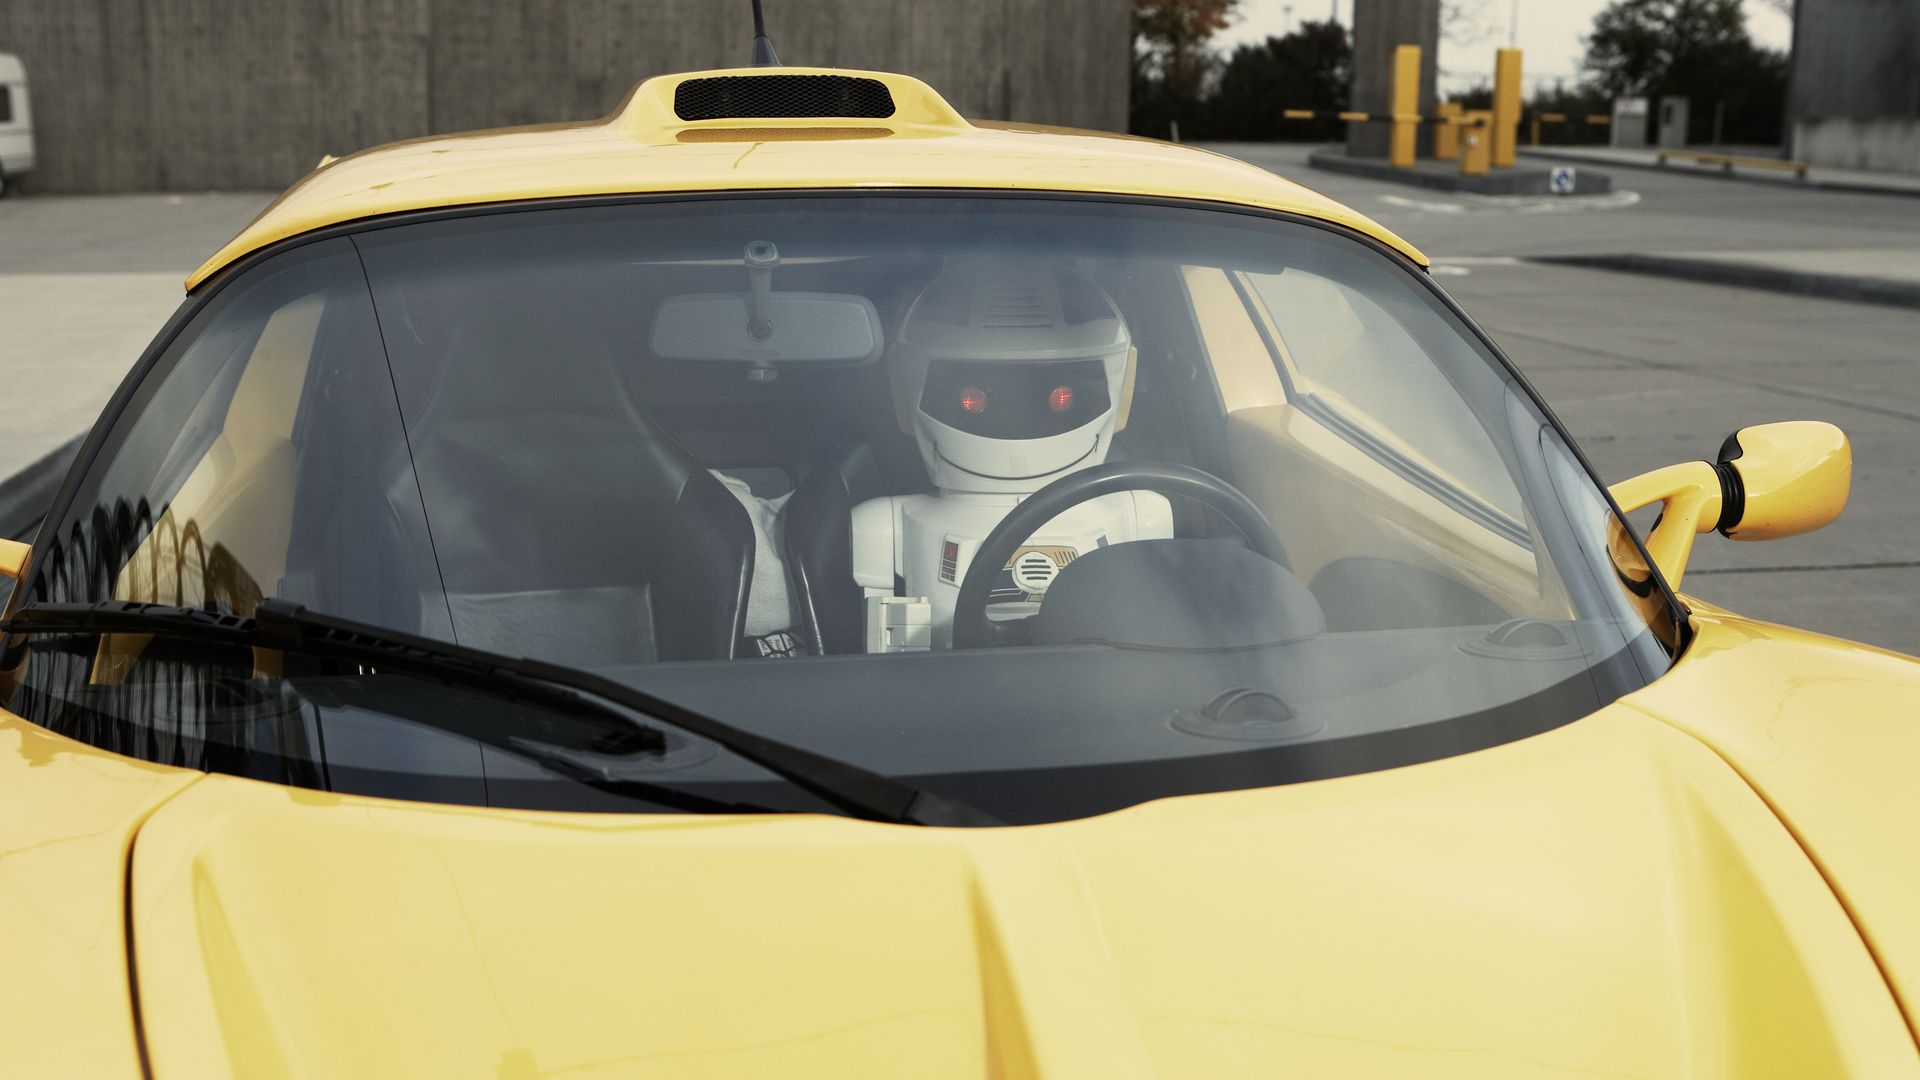 A robot driving a car